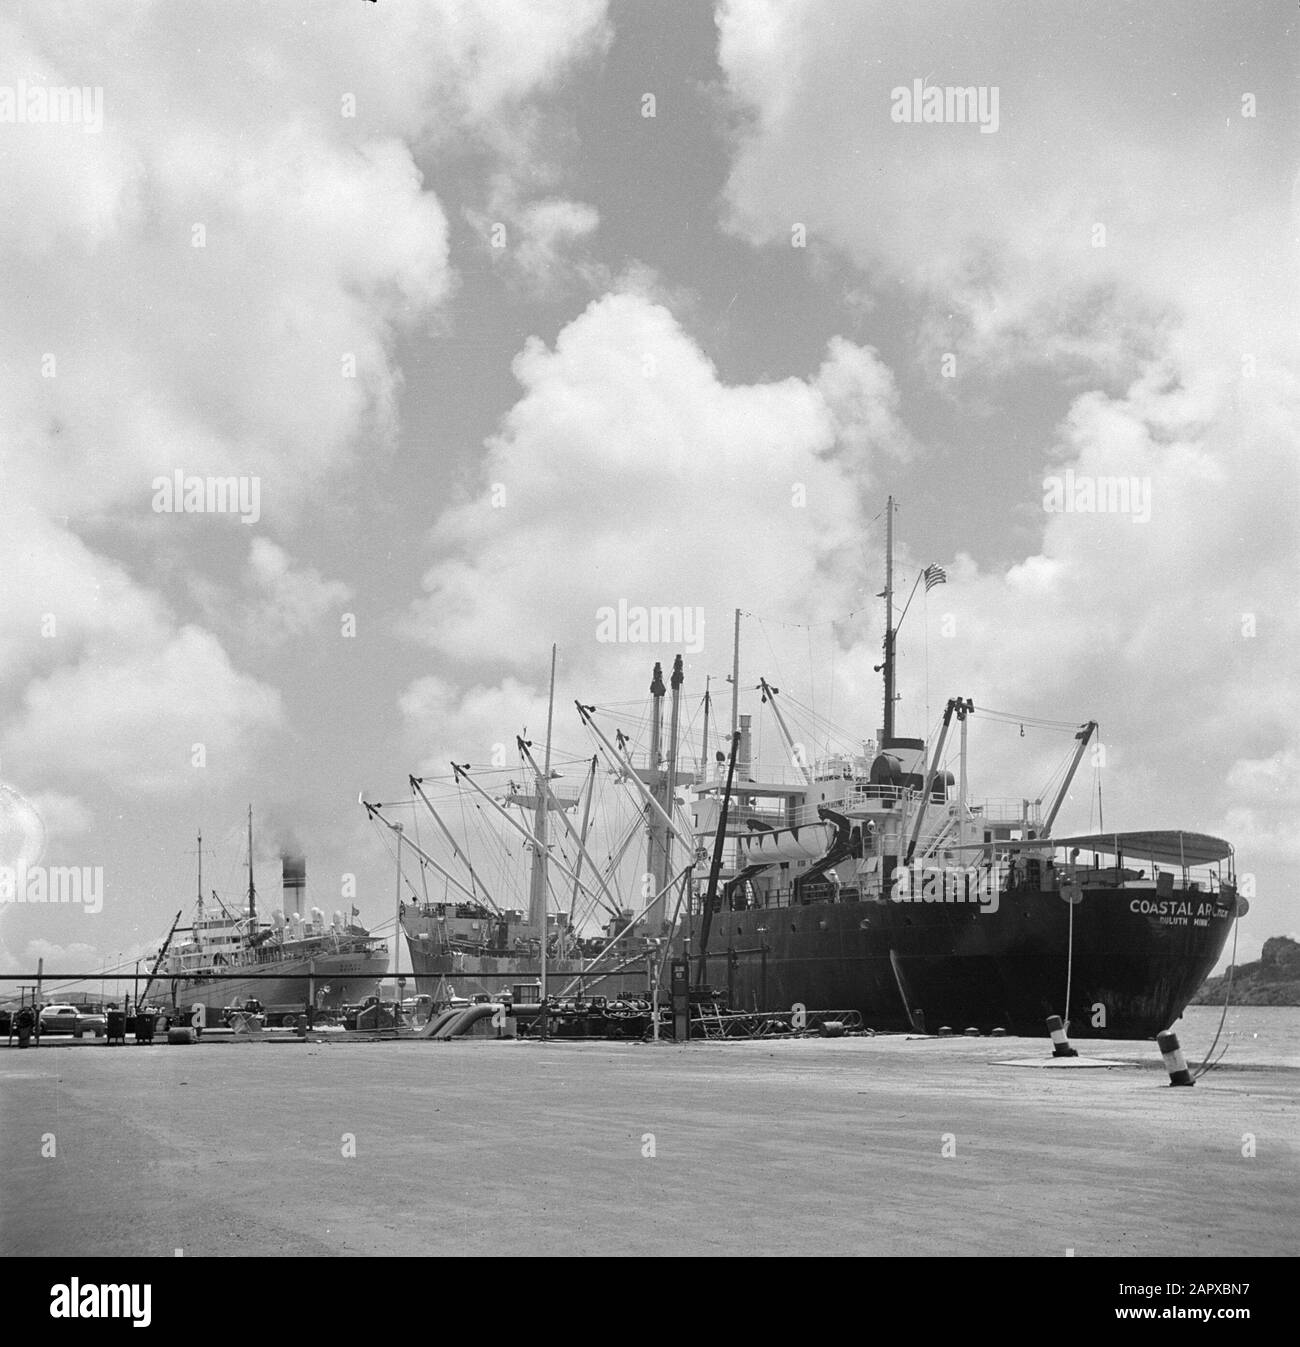 Viaggio in Suriname e le Antille olandesi navi nel porto della raffineria di petrolio della CPIM su Isla il Curaçao Data: 1947 Località: Curaçao Parole Chiave: Porti, raffinerie, navi Nome dell'istituzione: CPIM Foto Stock